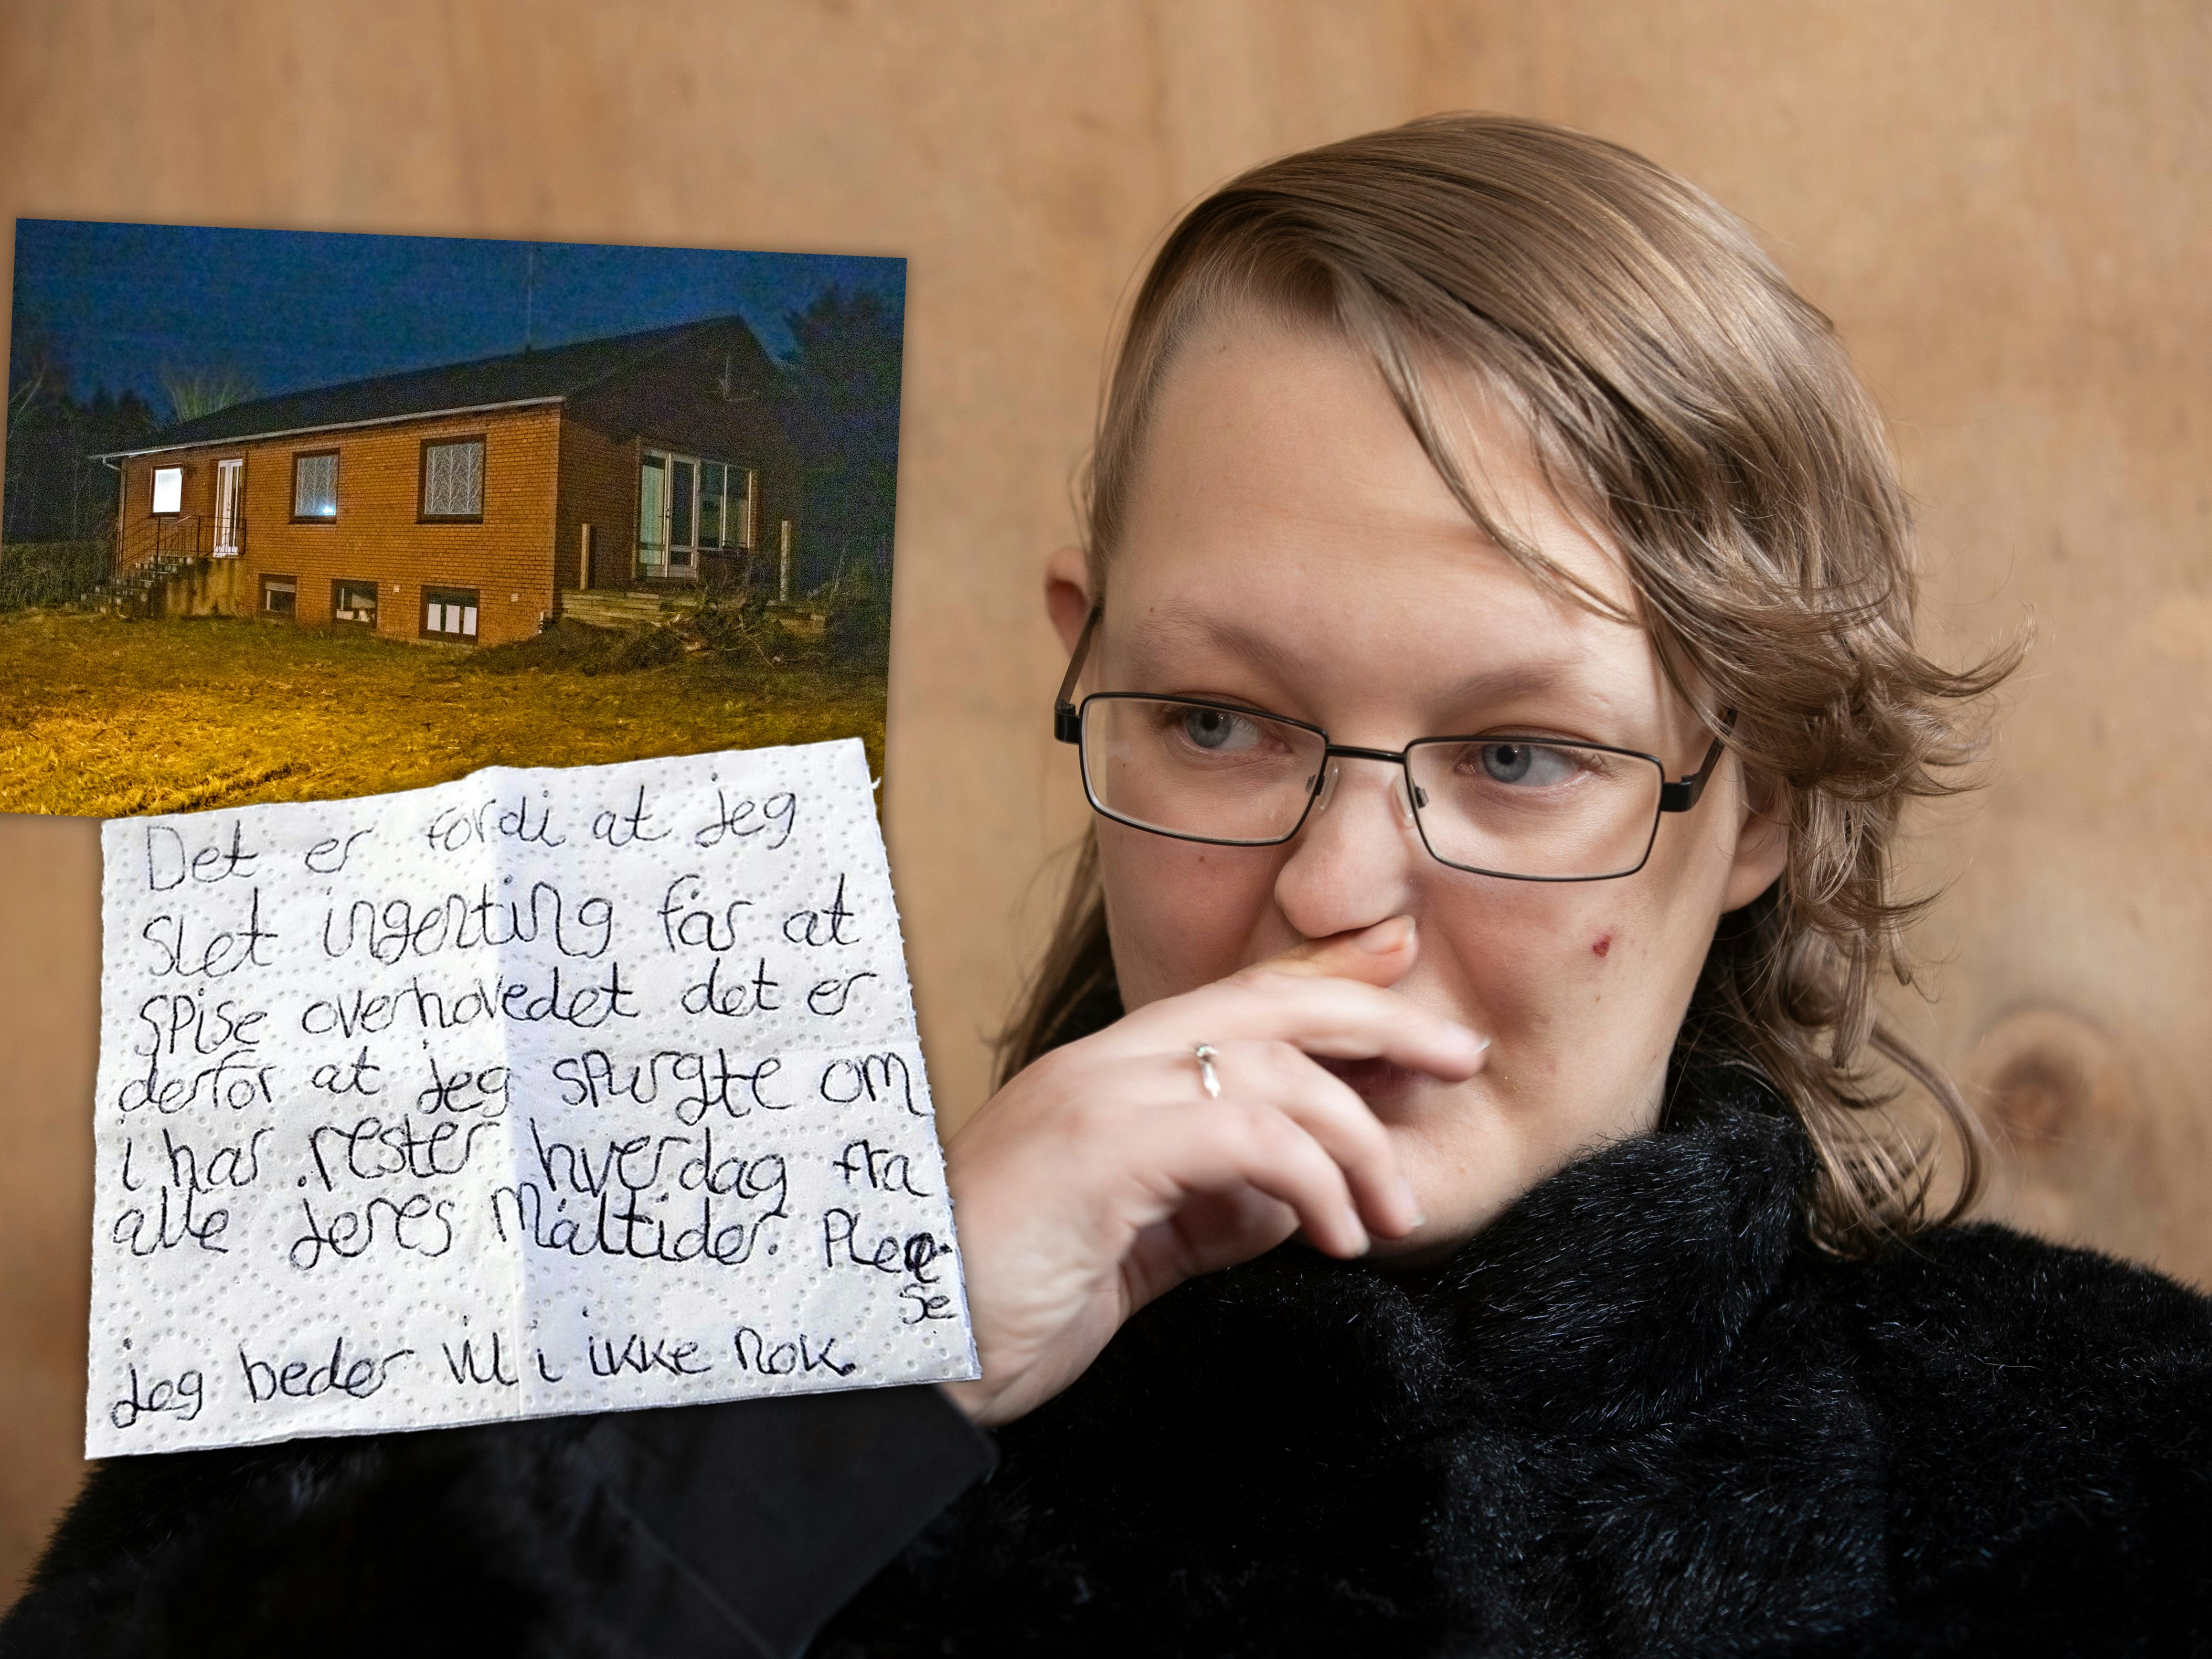 23-årig kvinde skrev sos-brev: Holdt fanget og blev udsultet